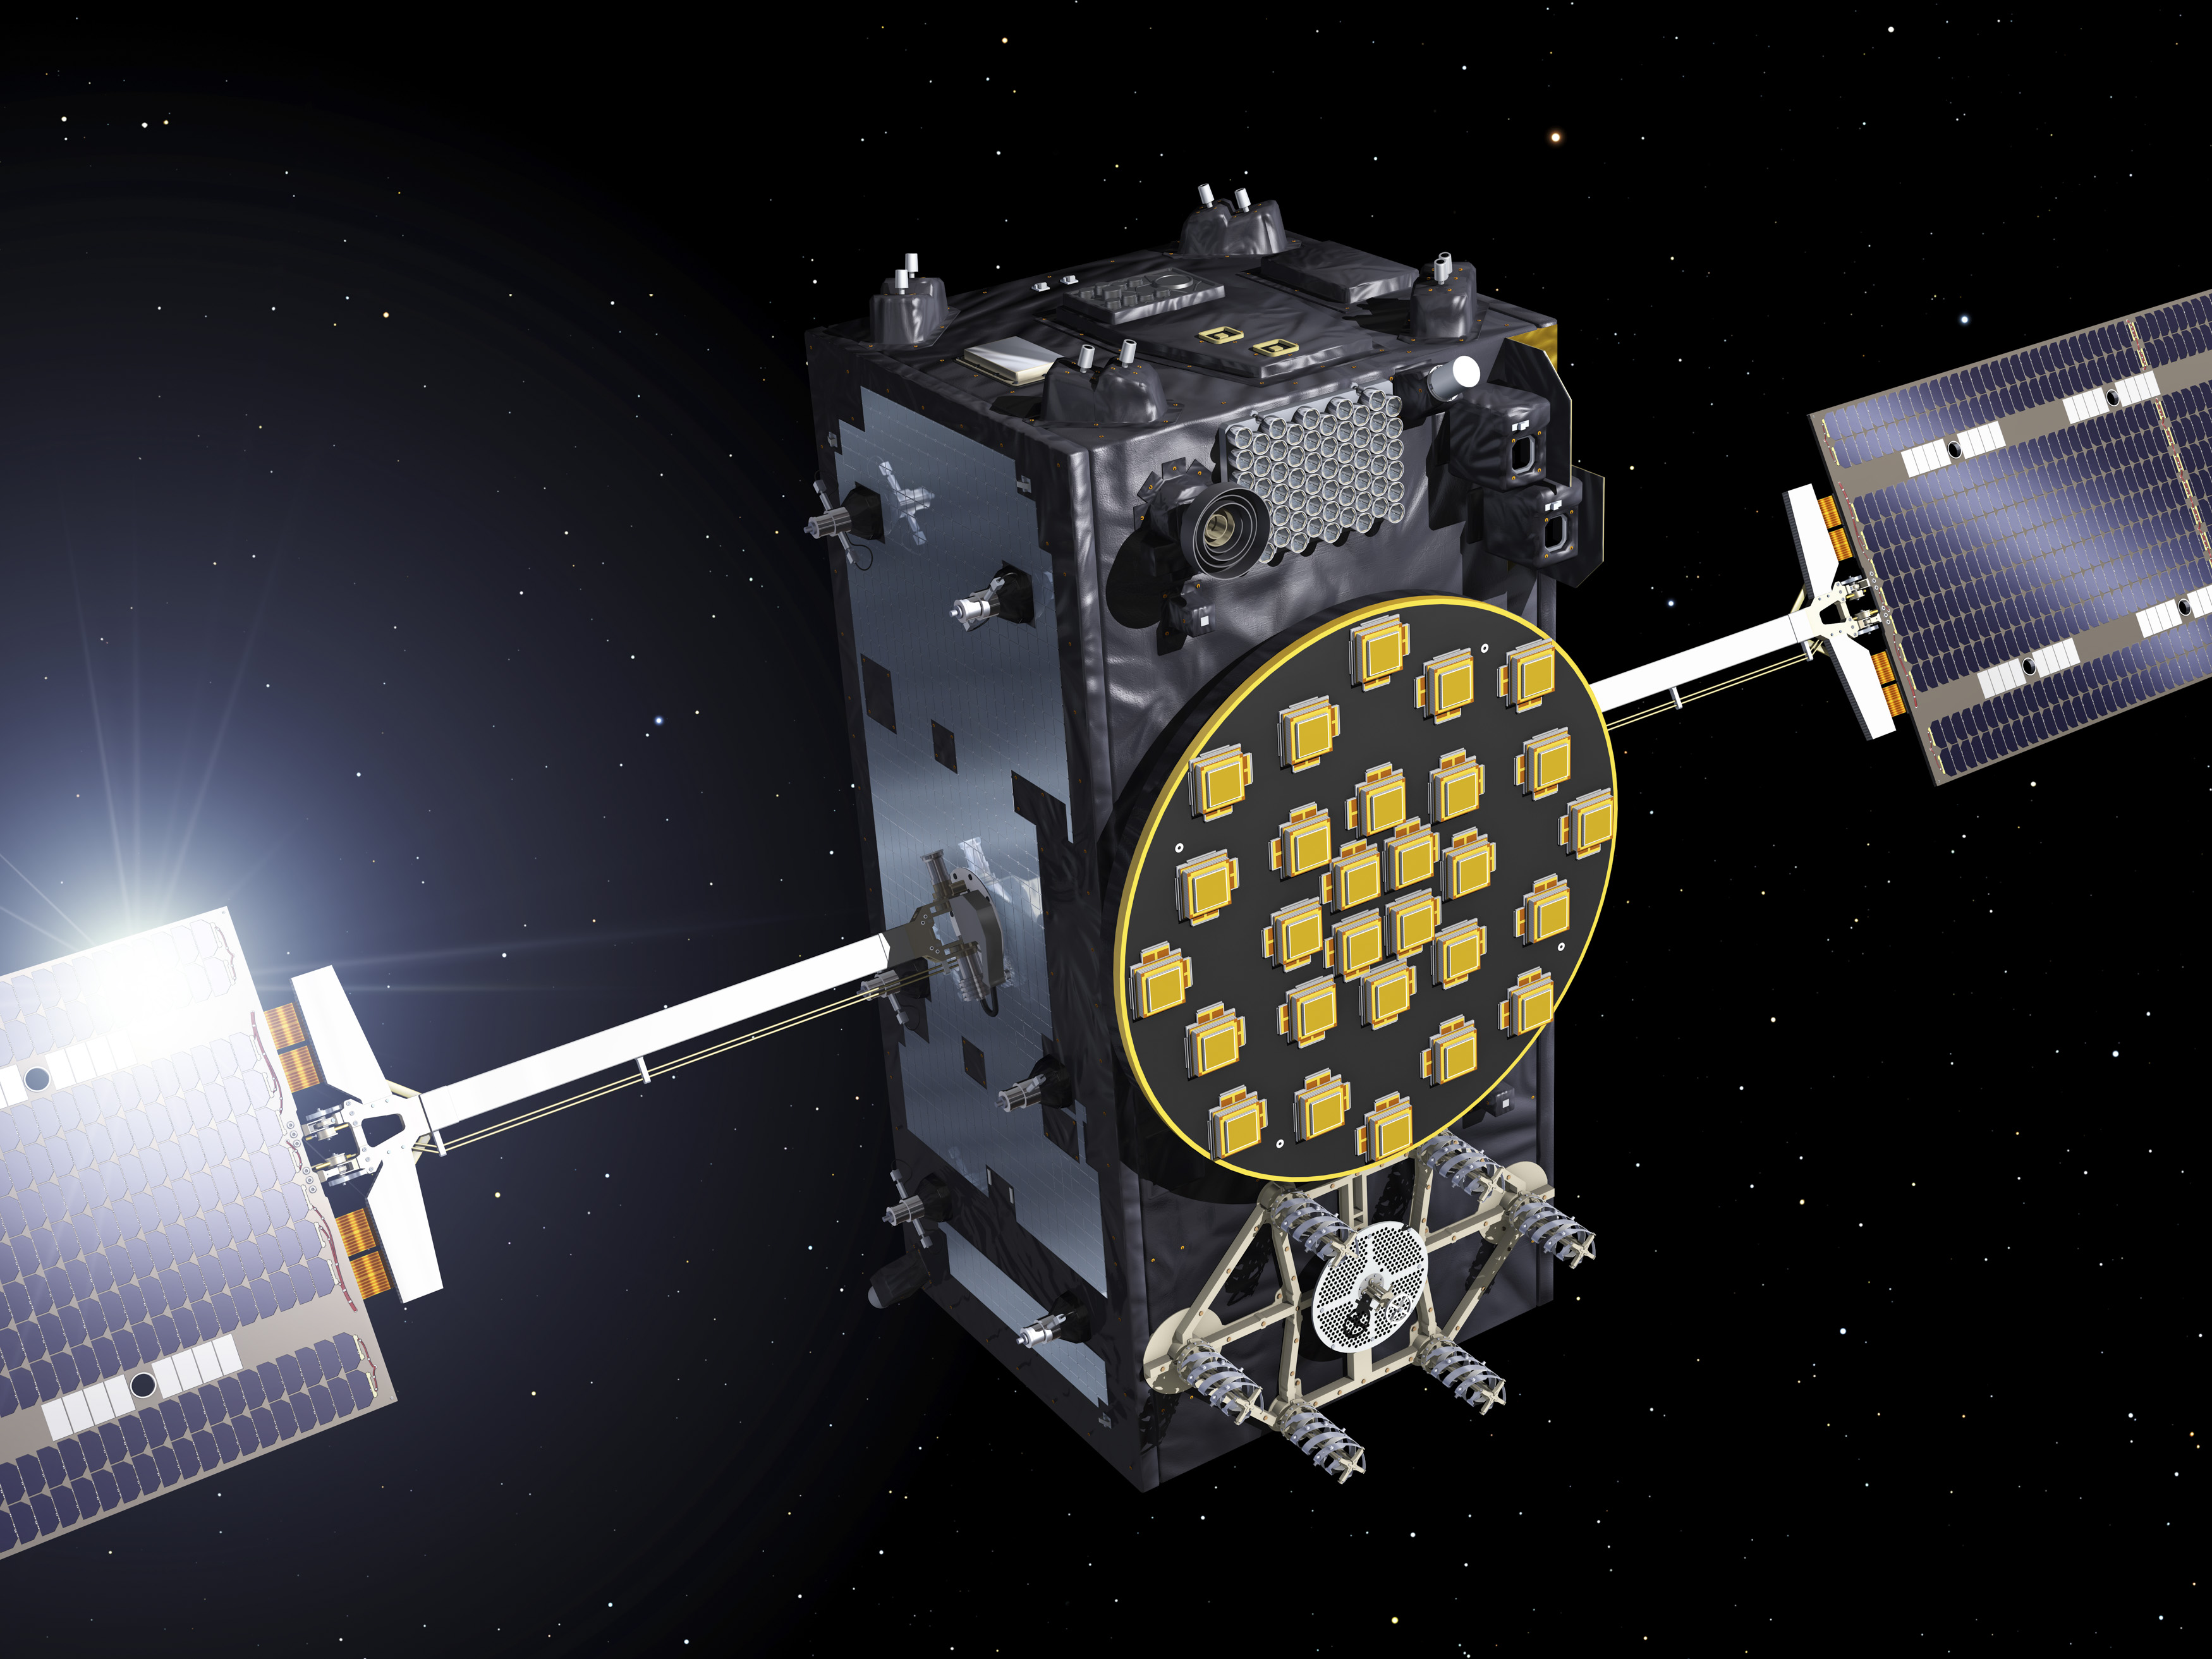 Кто такой спутник. Навигационная спутниковая система Galileo. Спутниковые радионавигационные системы GPS ГЛОНАСС Galileo. Европейская навигационная система Галилео. Спутник системы навигации Галилео.